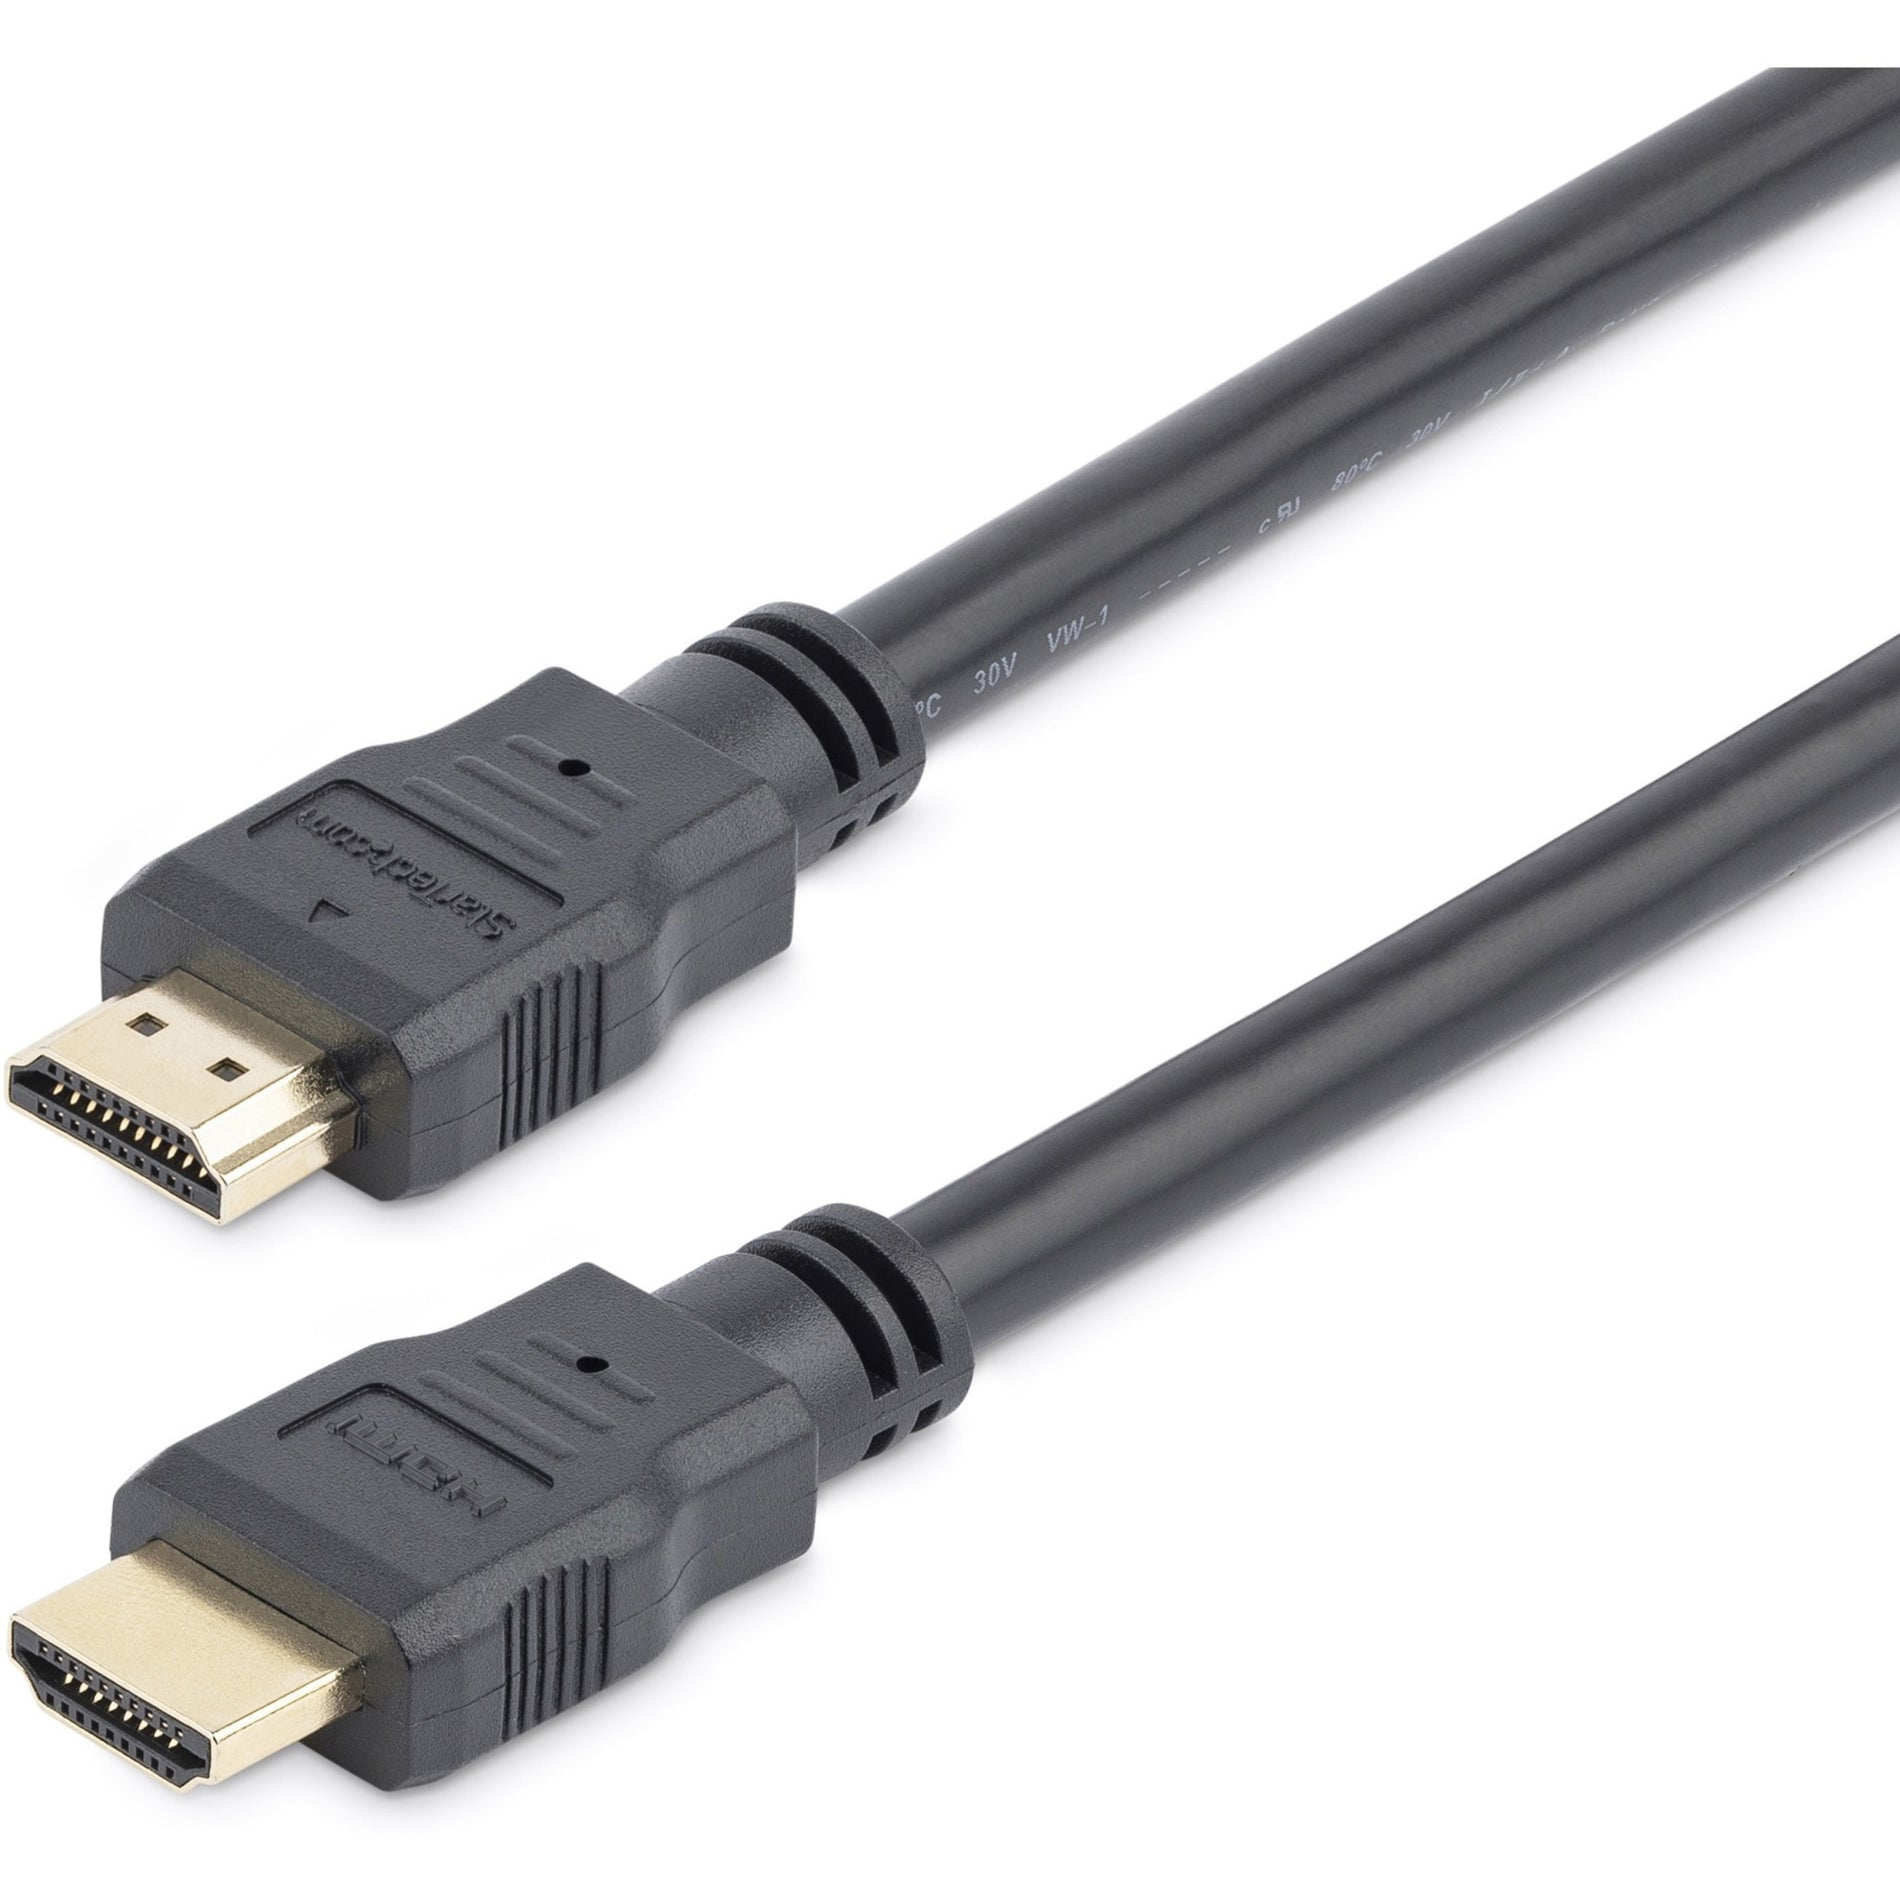 星采科技 2米 高速 HDMI数据线 - 超高清 4k x 2k HDMI数据线，柔韧，耐腐蚀，黑色